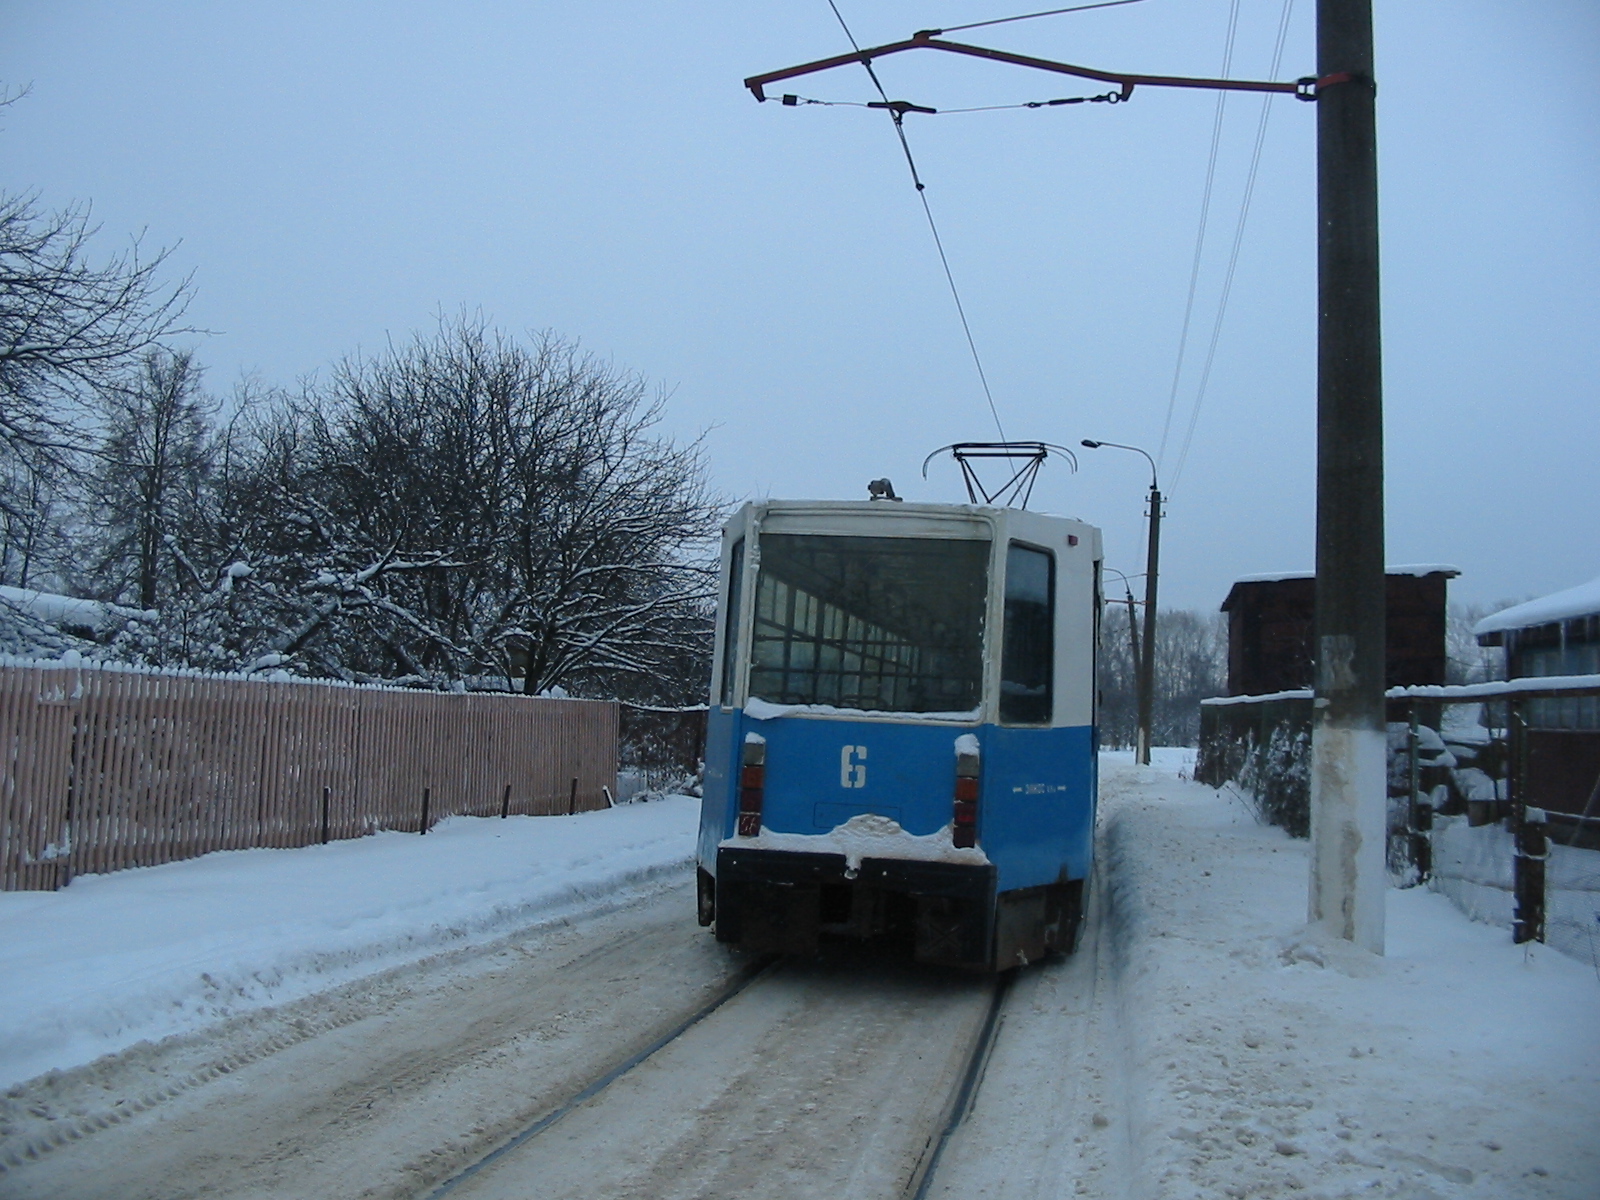 Трамвай 71-608К 6, вид сзади